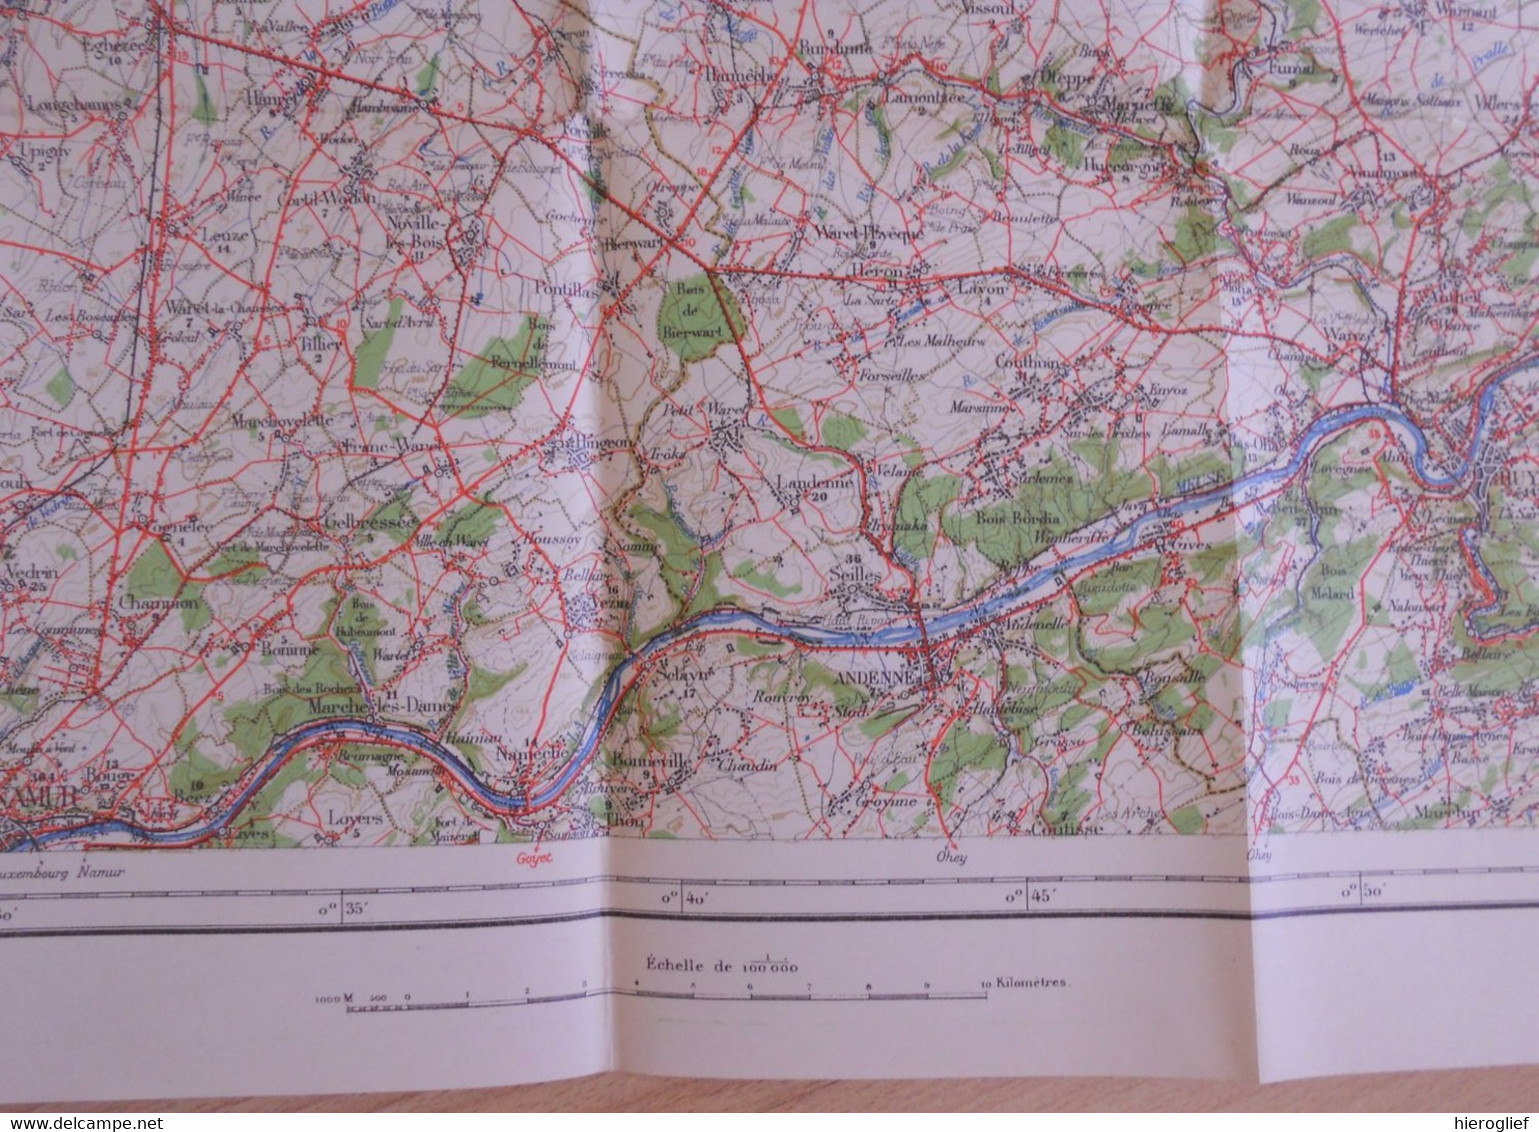 Carte De BELGIQUE Nr 6 LIEGE Institut Cartographique Militaire Impression Litho 1933 Maastricht Hasselt Tongeren Tienen - Topographical Maps